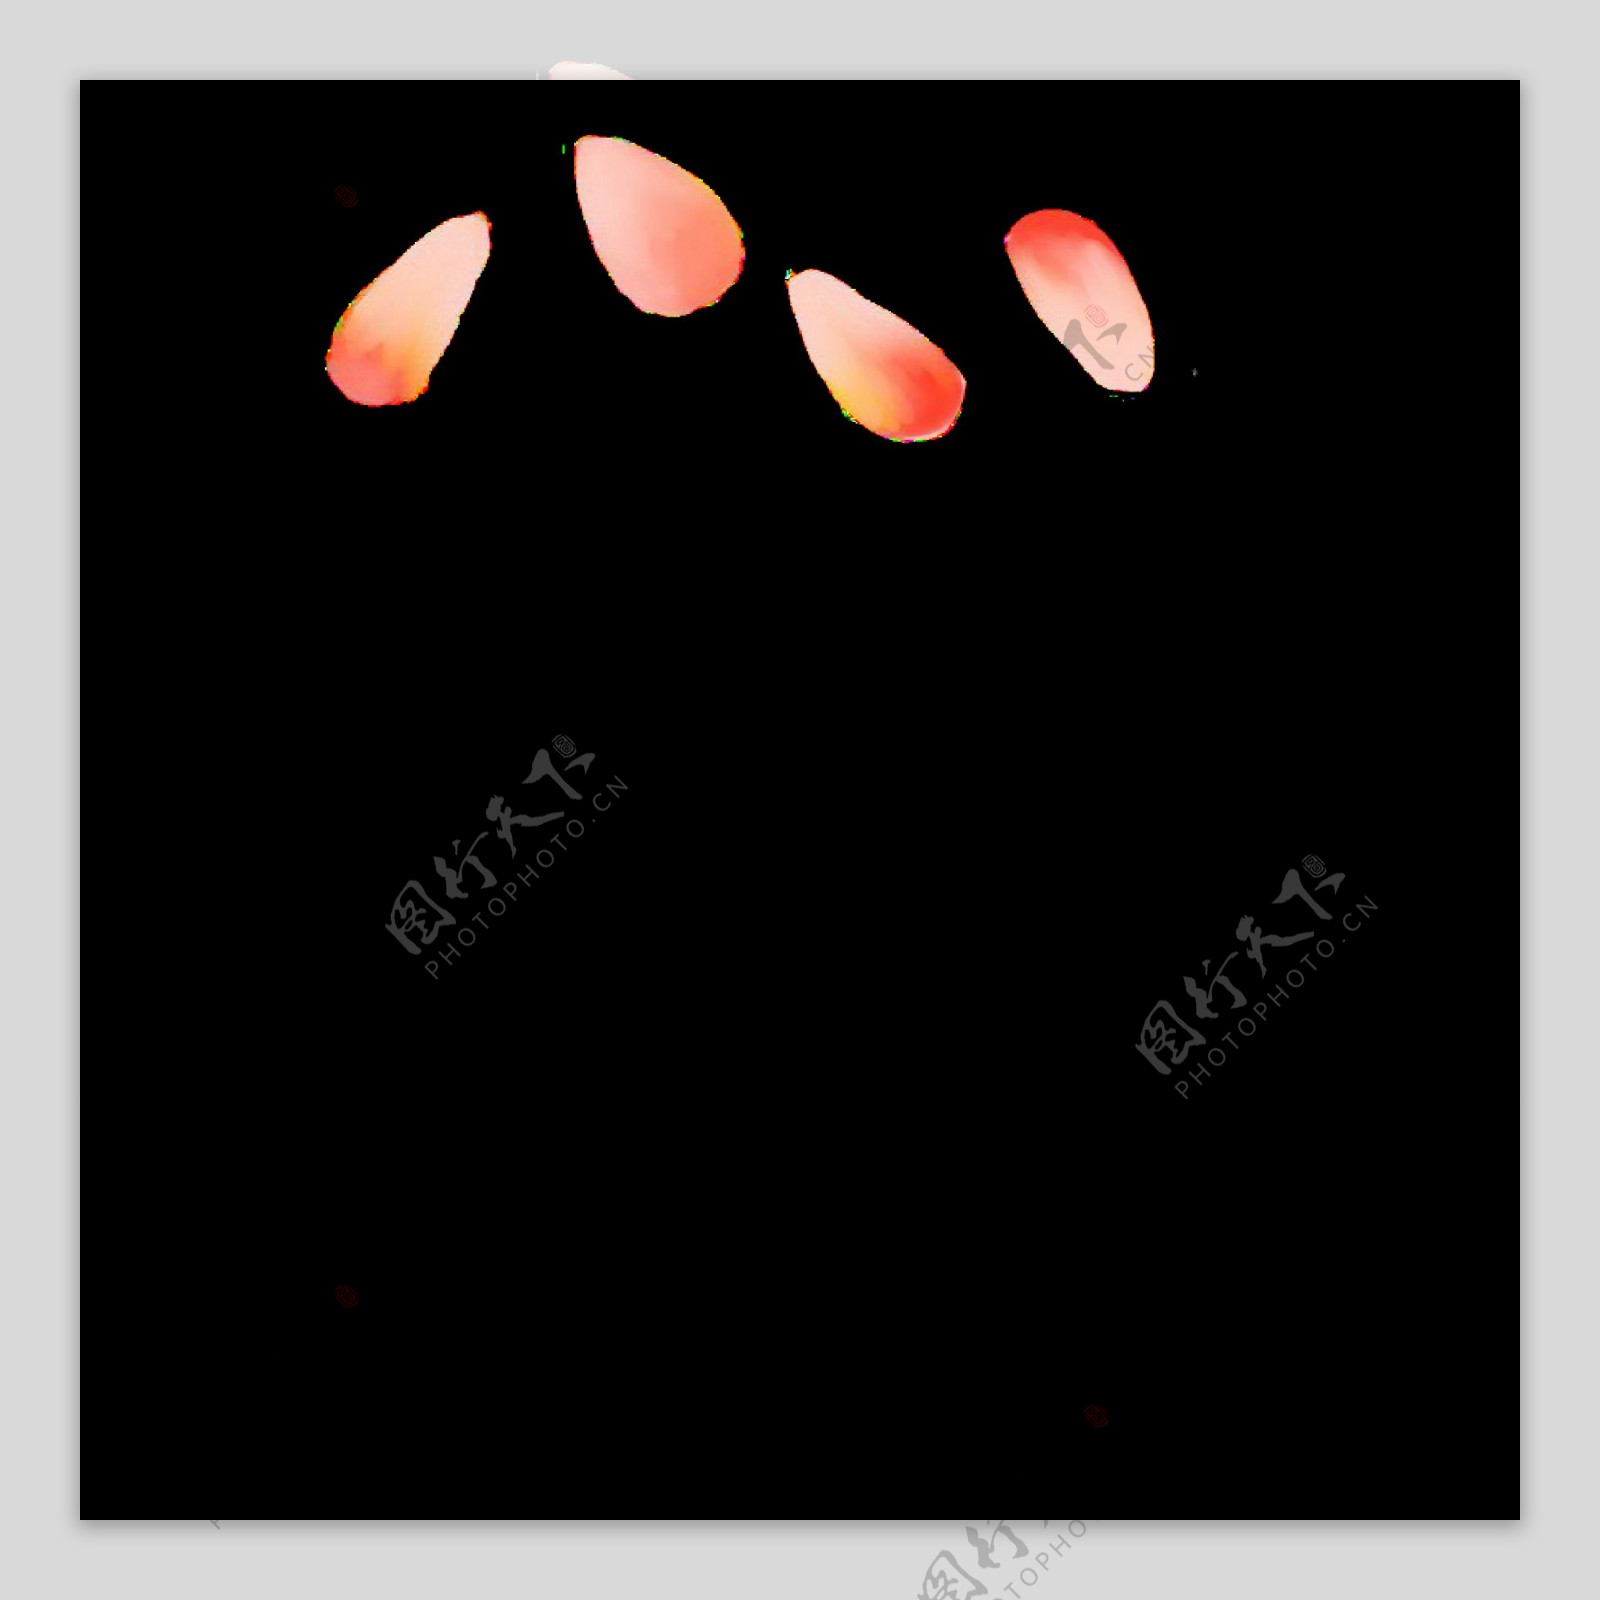 橙色的花瓣装饰插画